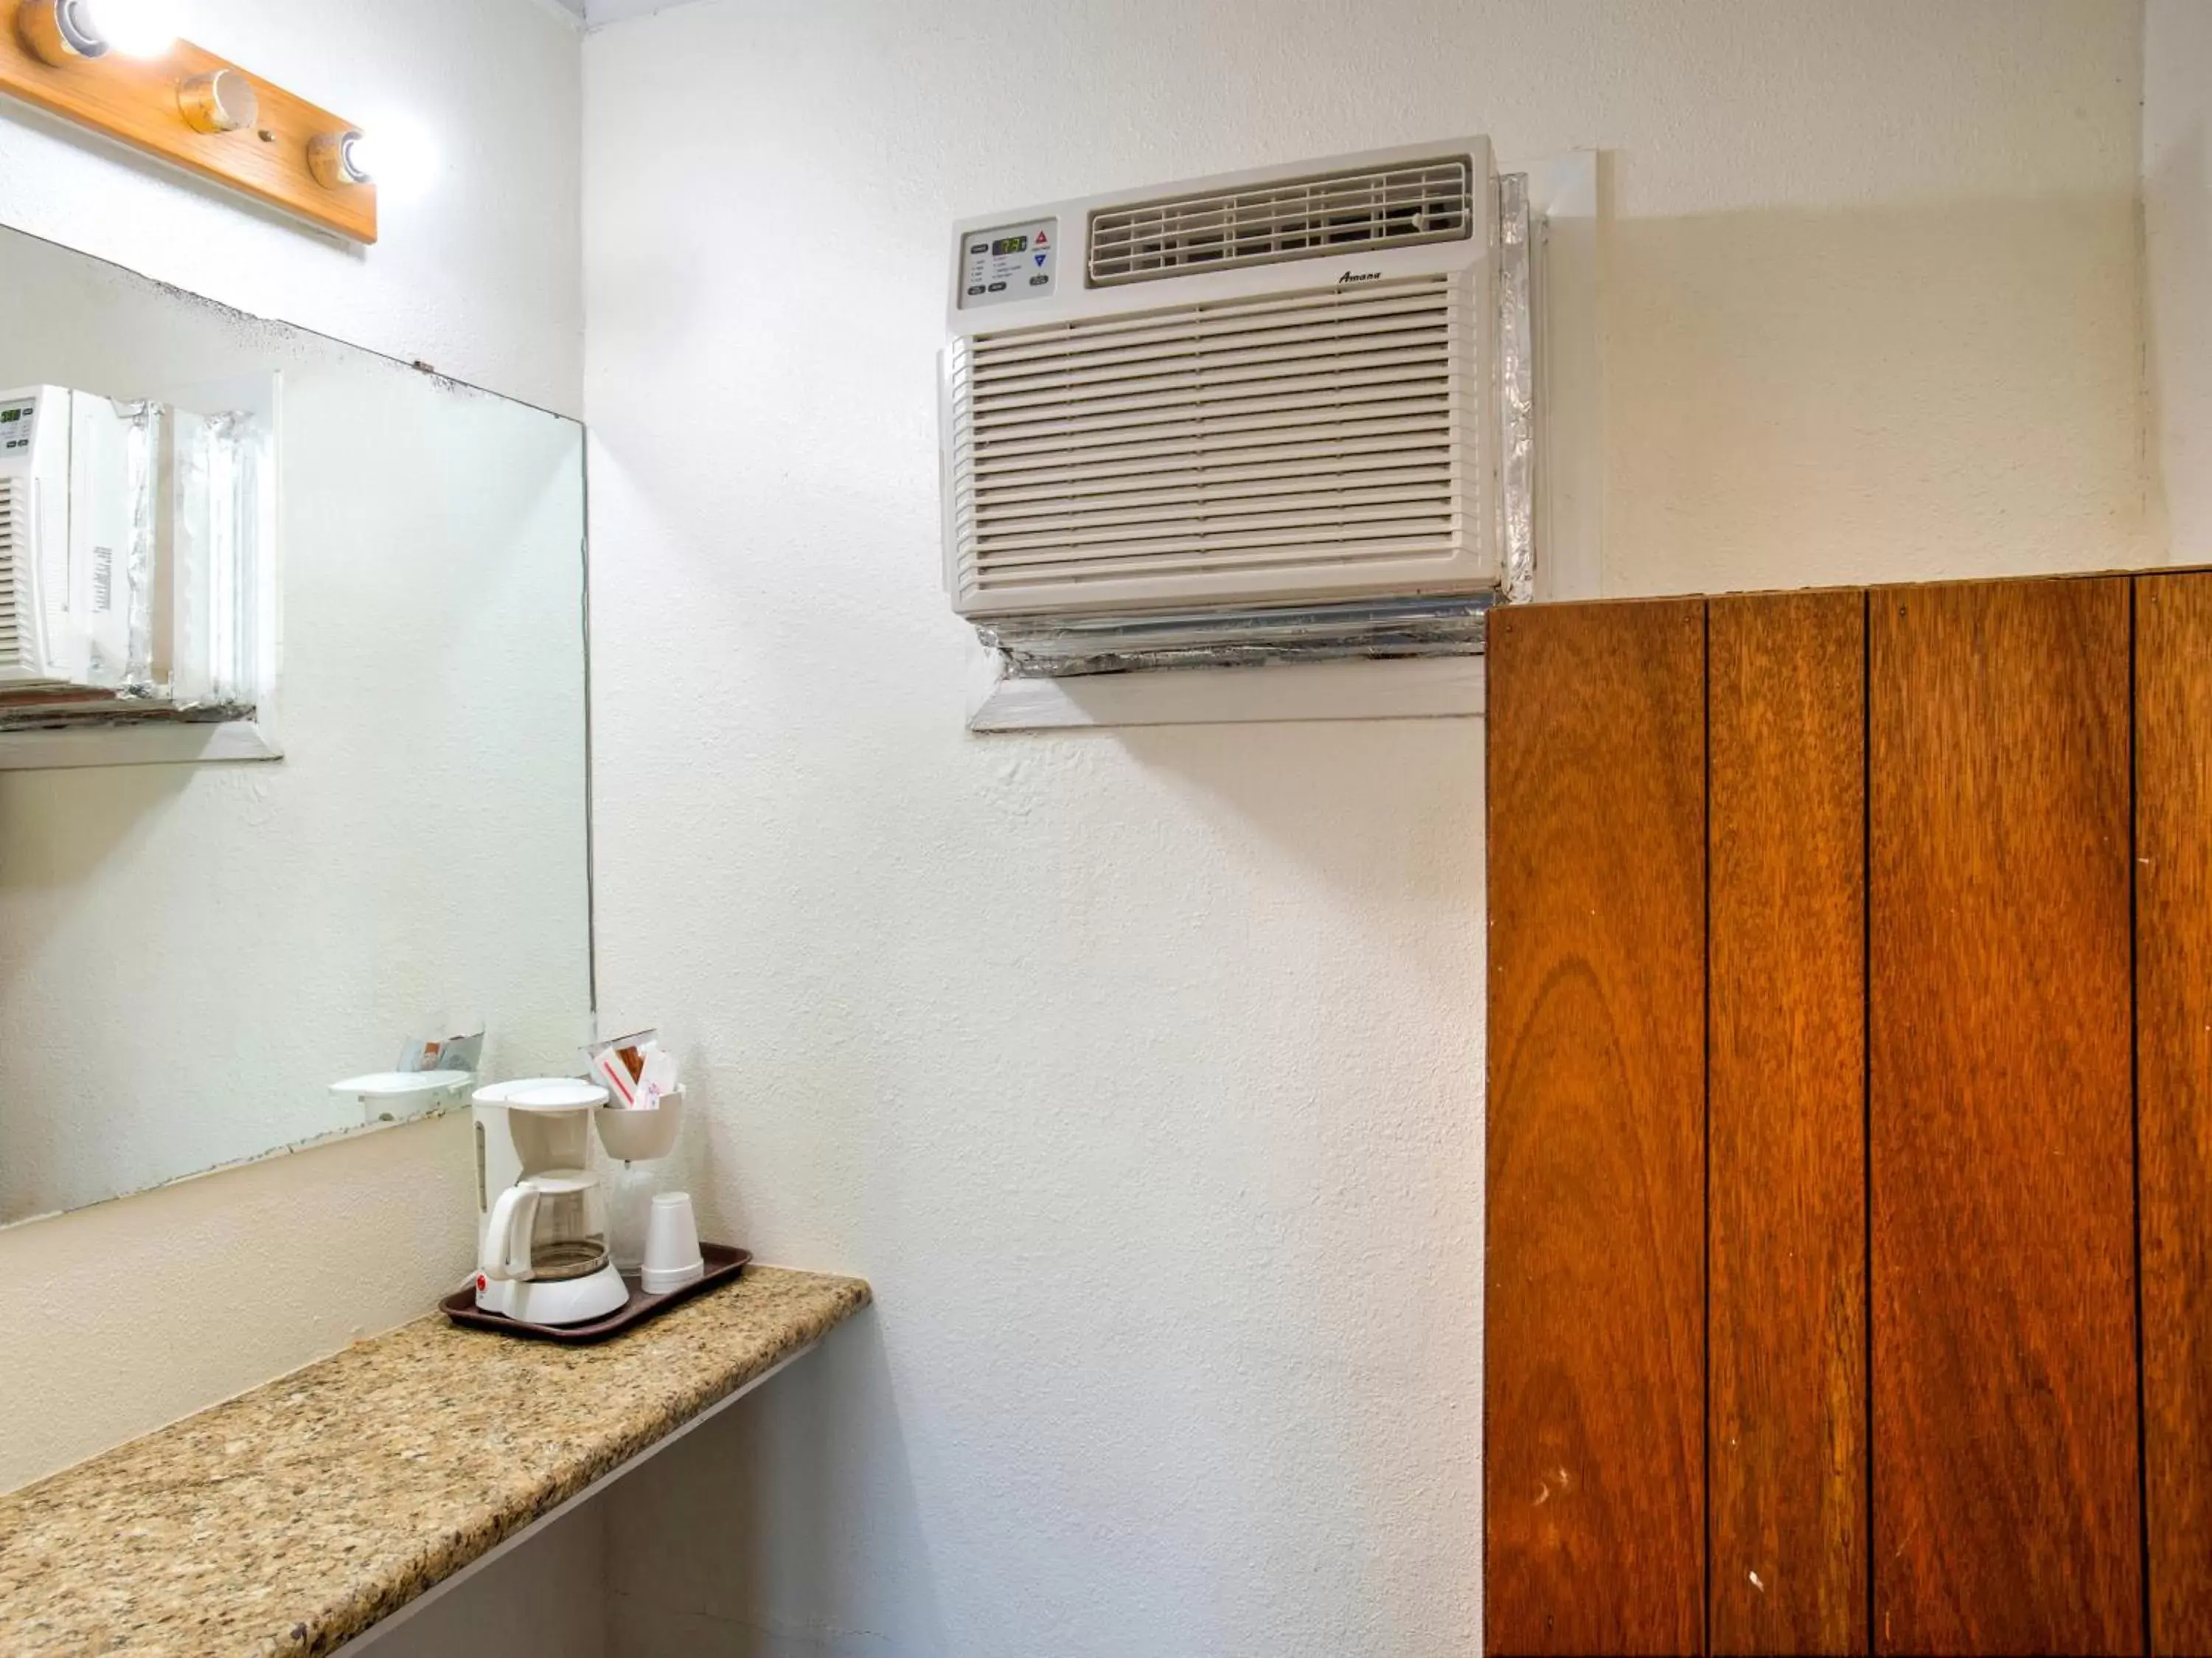 Area and facilities, Bathroom in Capital O Padre Island Corpus Christi